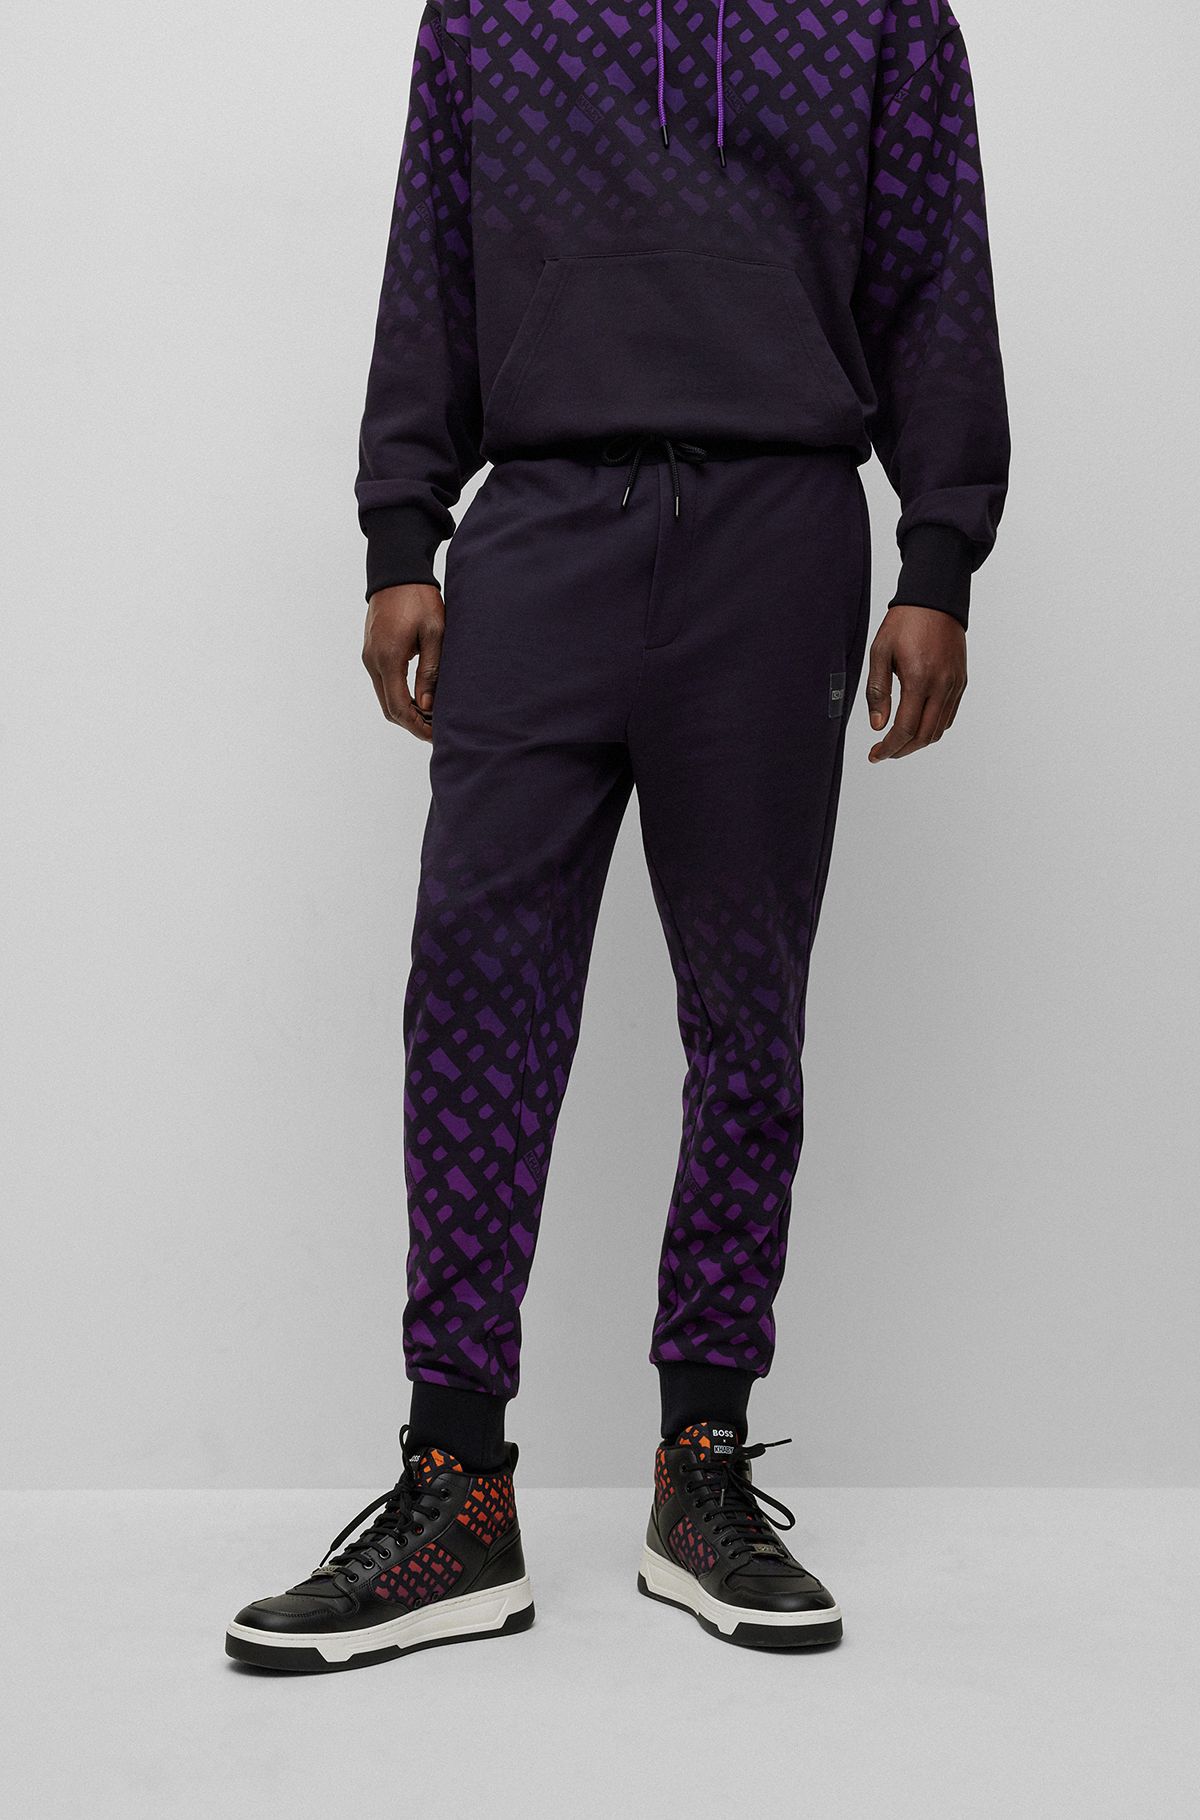 BOSS x Khaby Pantalones de chándal relaxed fit en mezcla de algodón con monogramas en efecto degradado, Púrpura oscuro